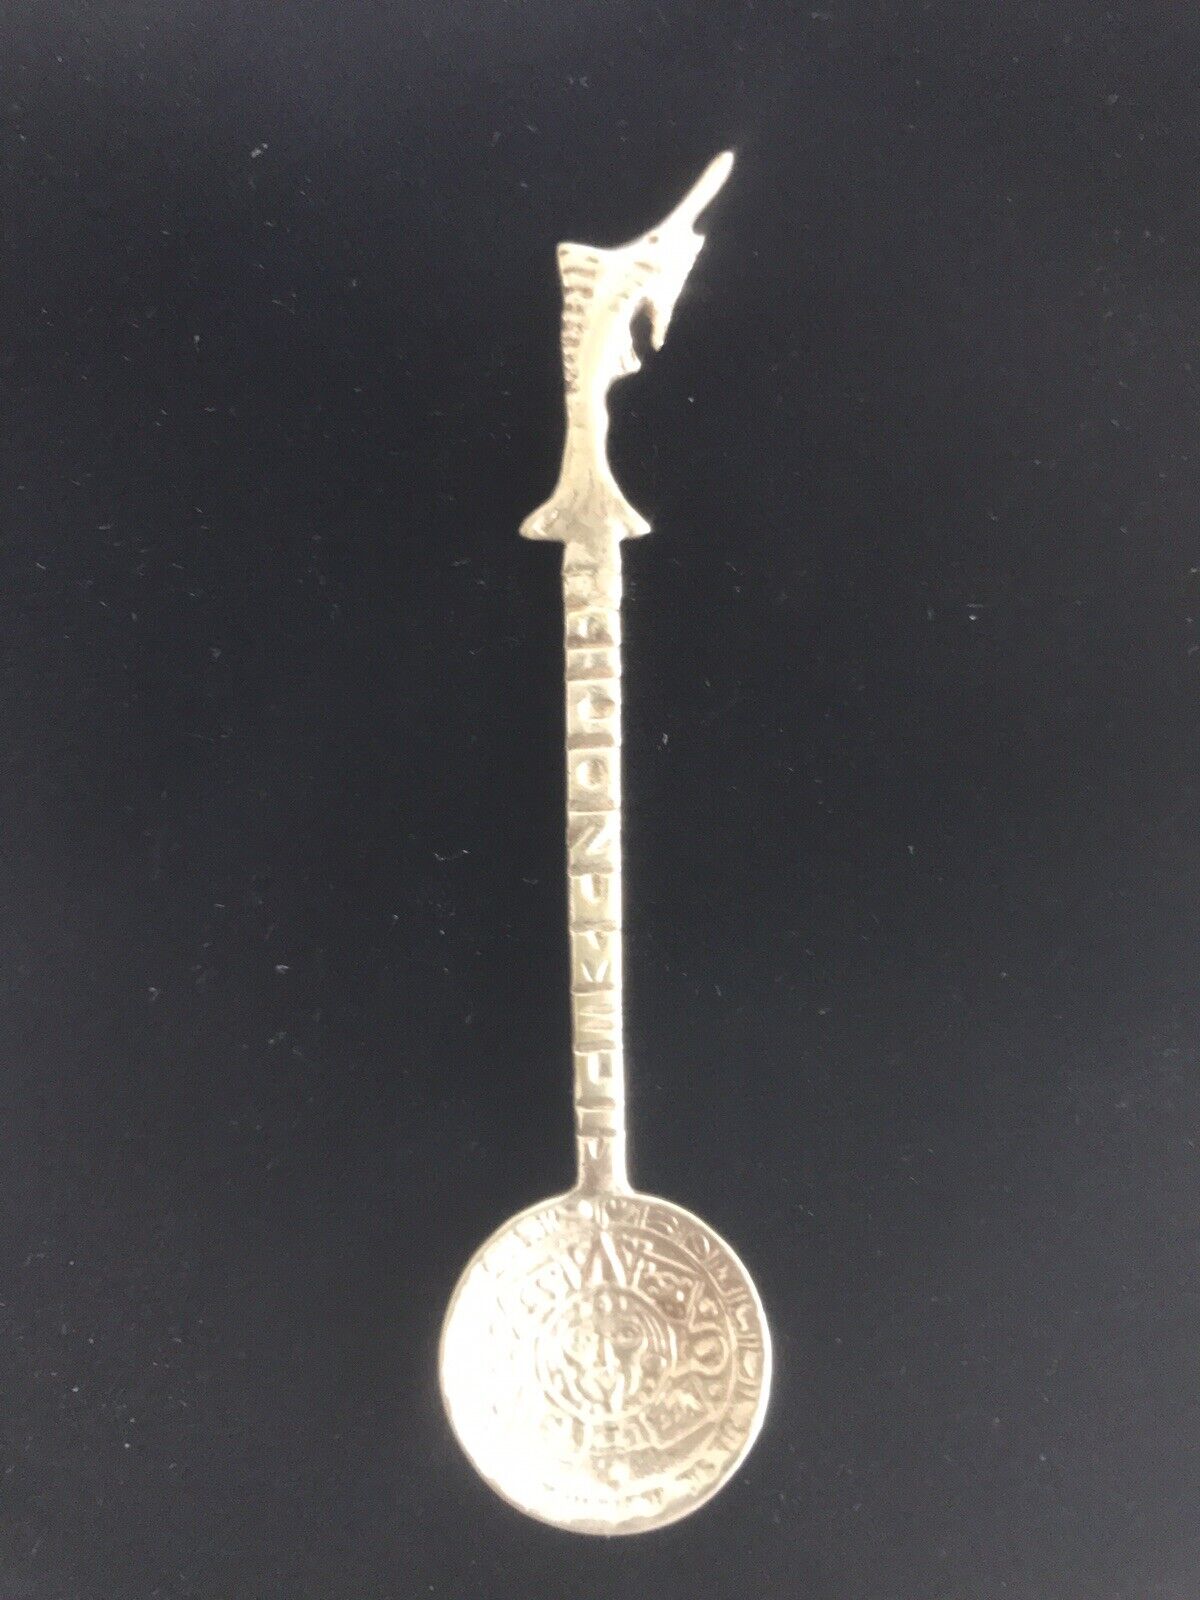 Vintage Mexico Collectible Alpaca Silver Spoon Mayan Cozumel Marlin Emblem 4”